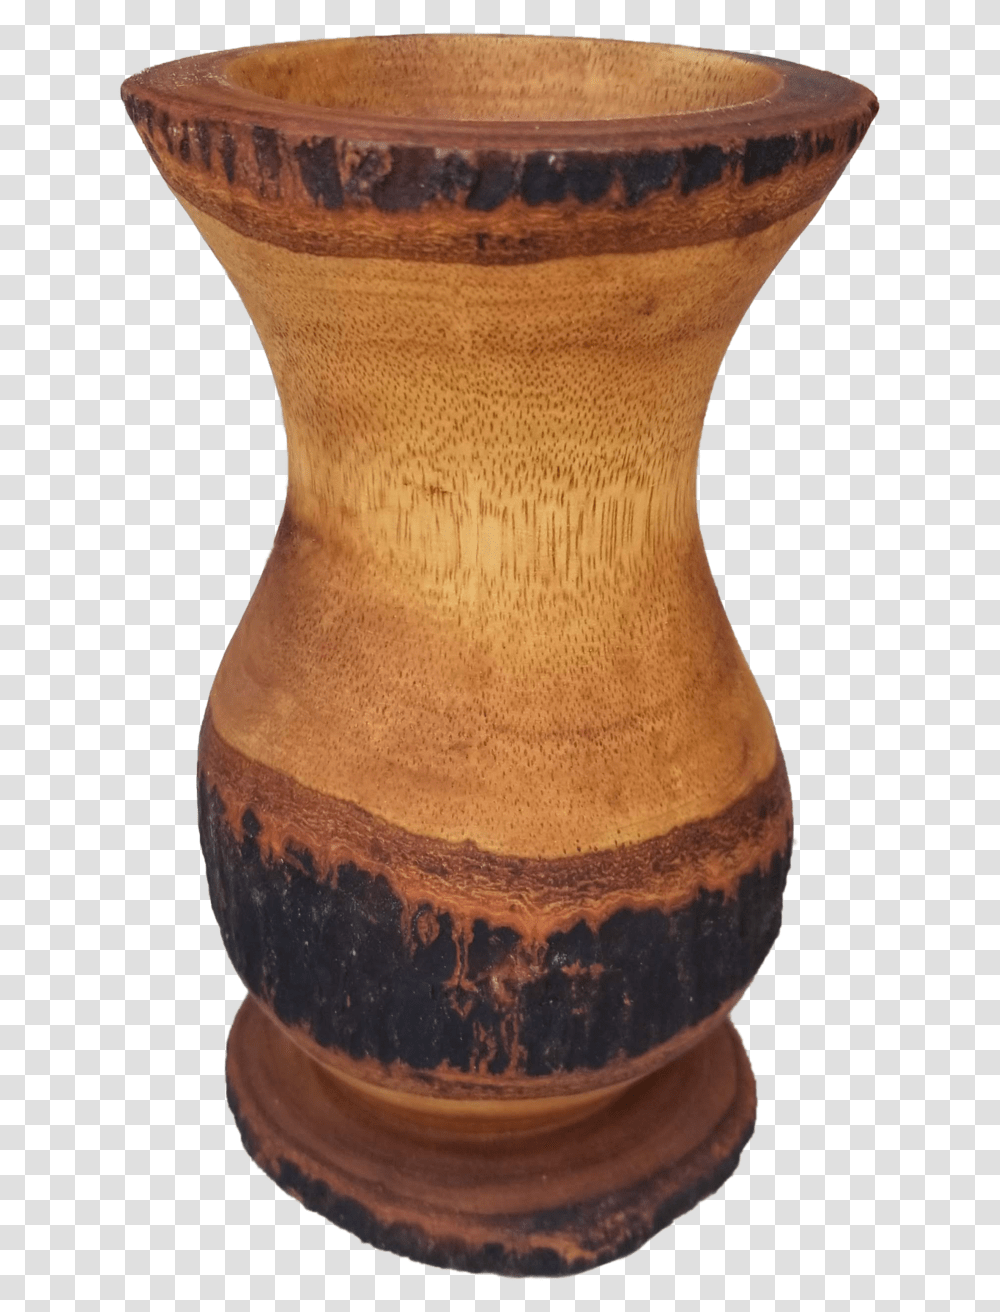 Tree Bark Vase 2 Stool, Jar, Pottery, Urn Transparent Png